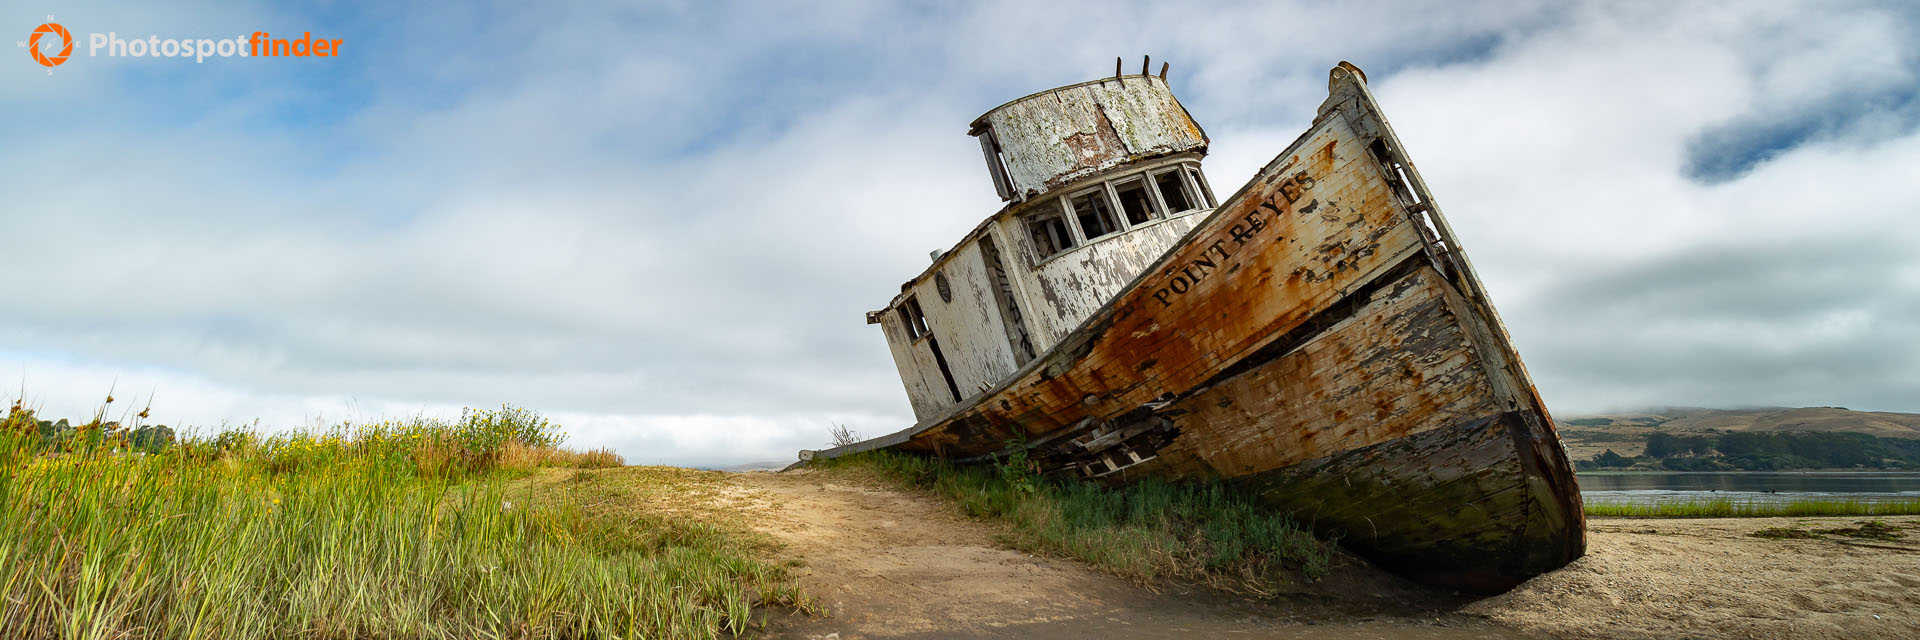 The Inverness Shipwreck